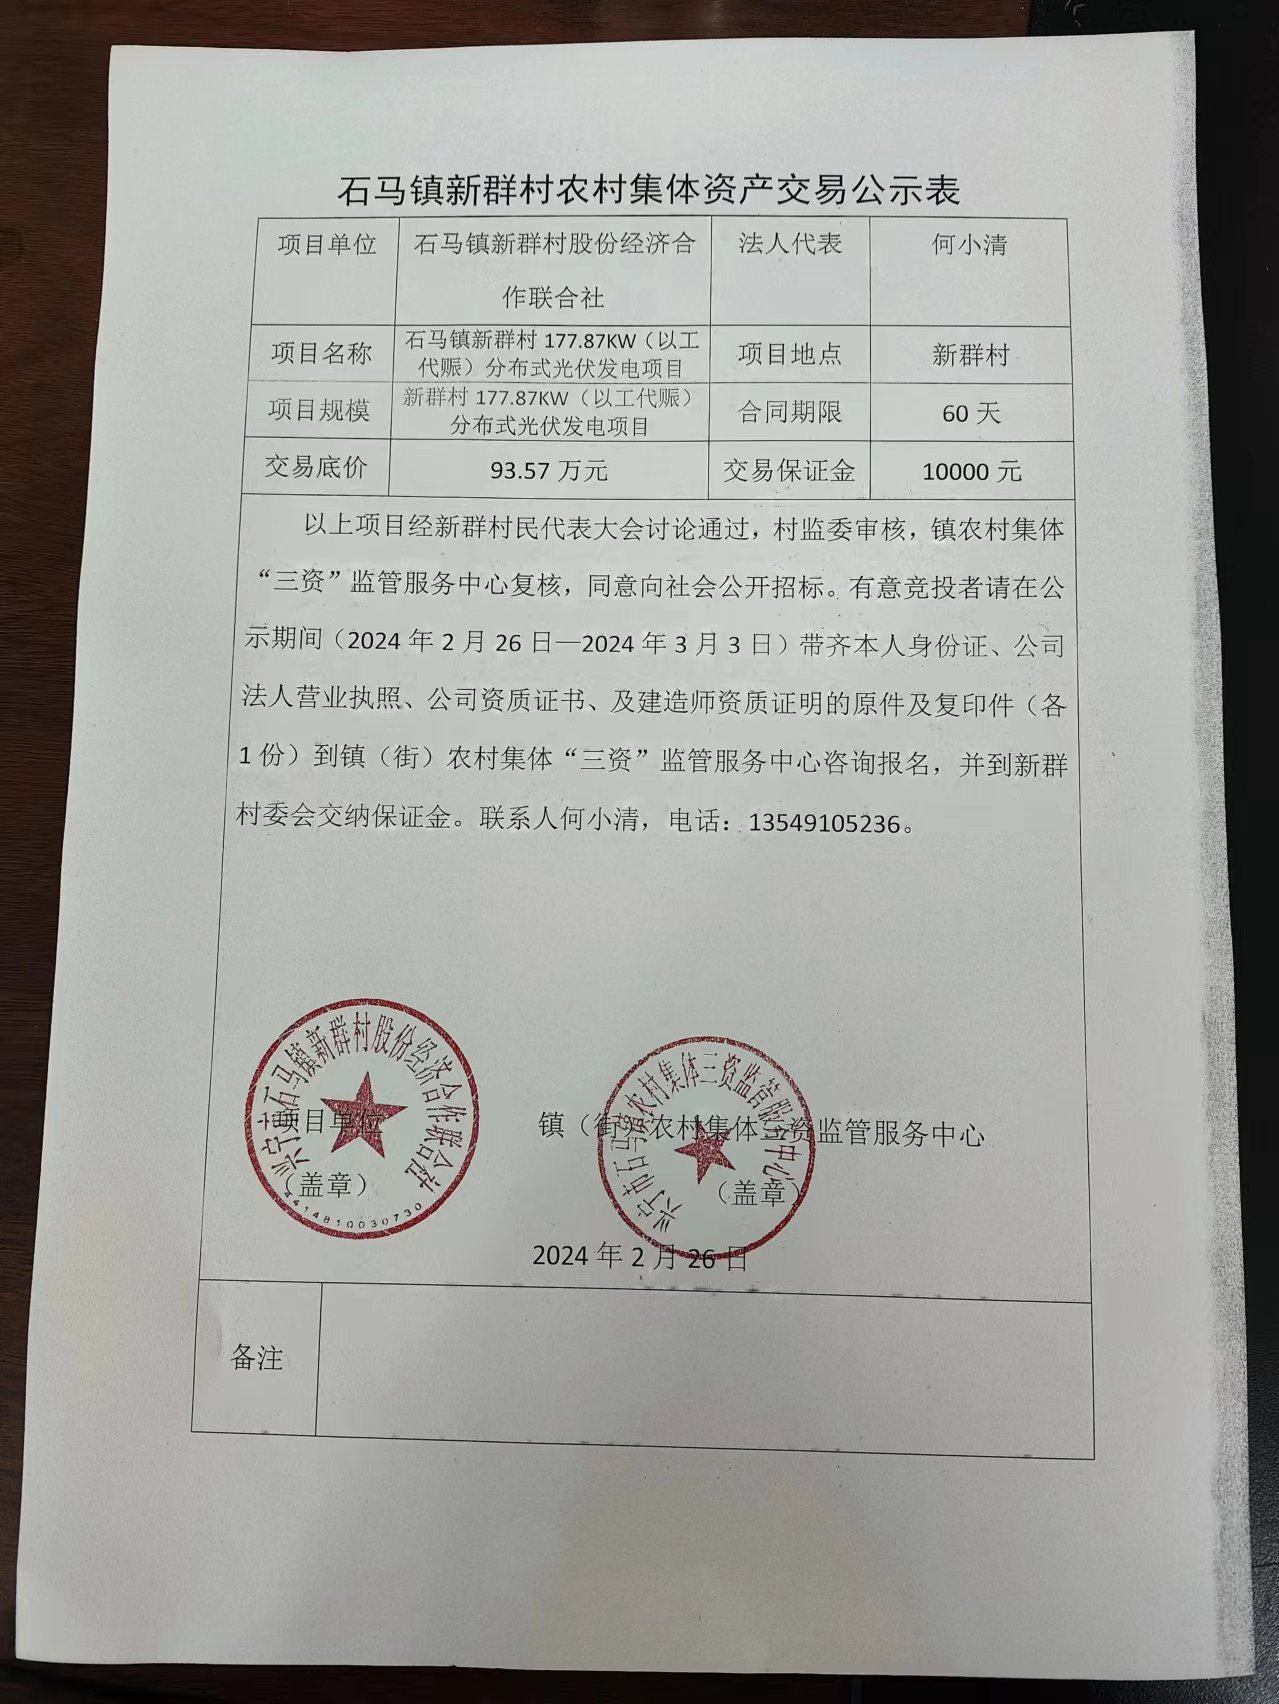 石马镇新群村农村集体资产交易公示表2024.2.26.jpg